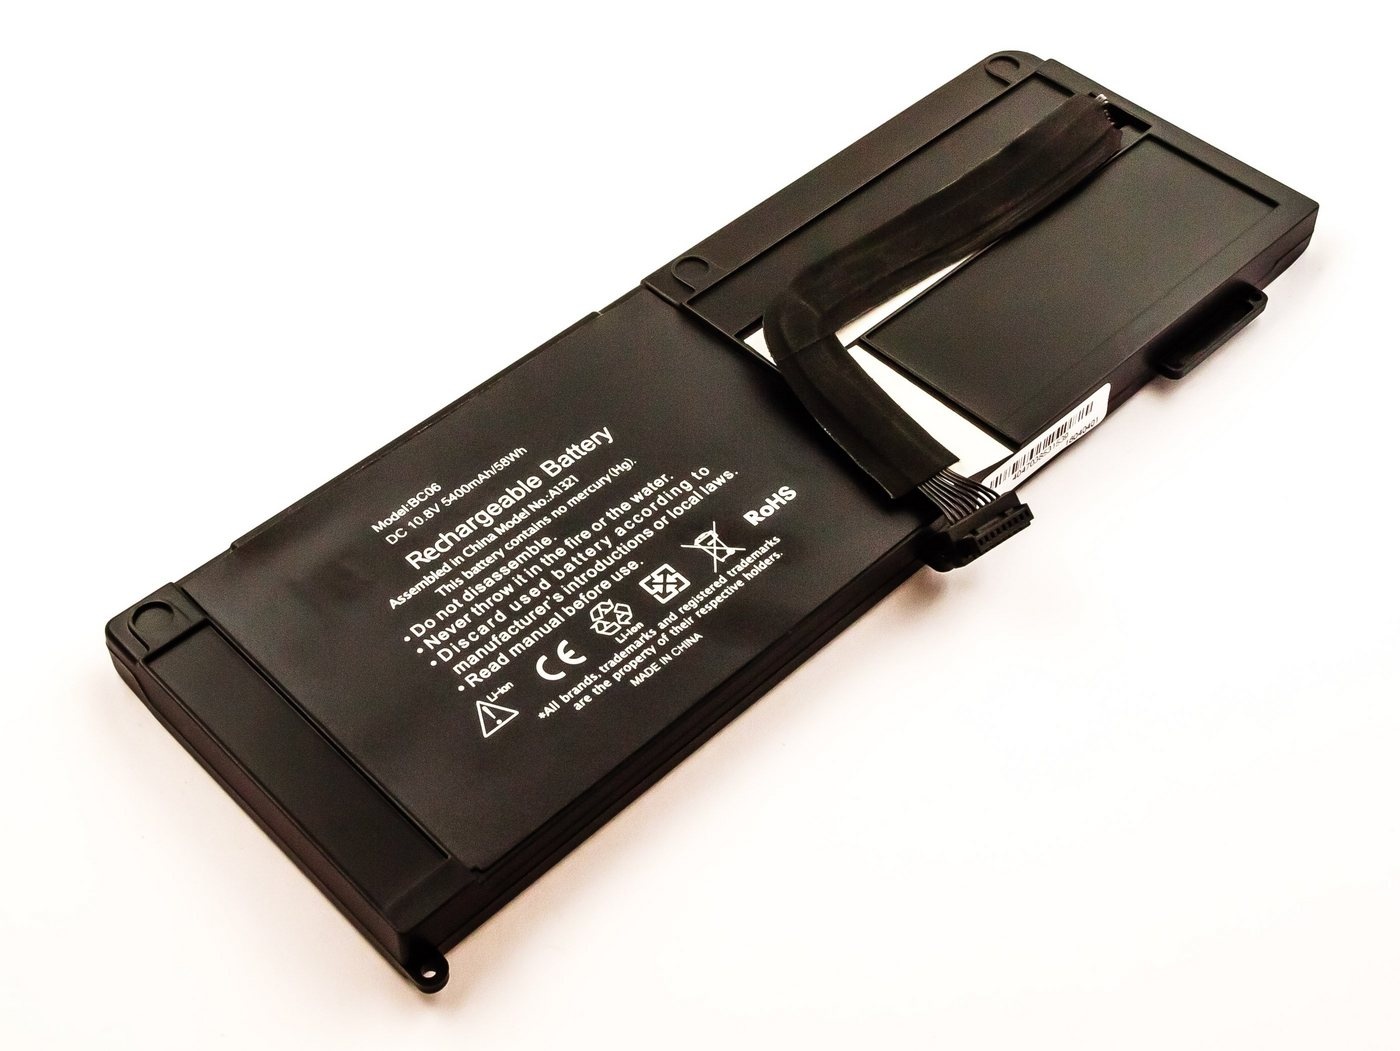 MobiloTec Akku kompatibel mit Apple MacBook Pro 15 A1286 Akku Akku 5400 mAh (1 St) schwarz 85 mm x 14 mm x 251 mm